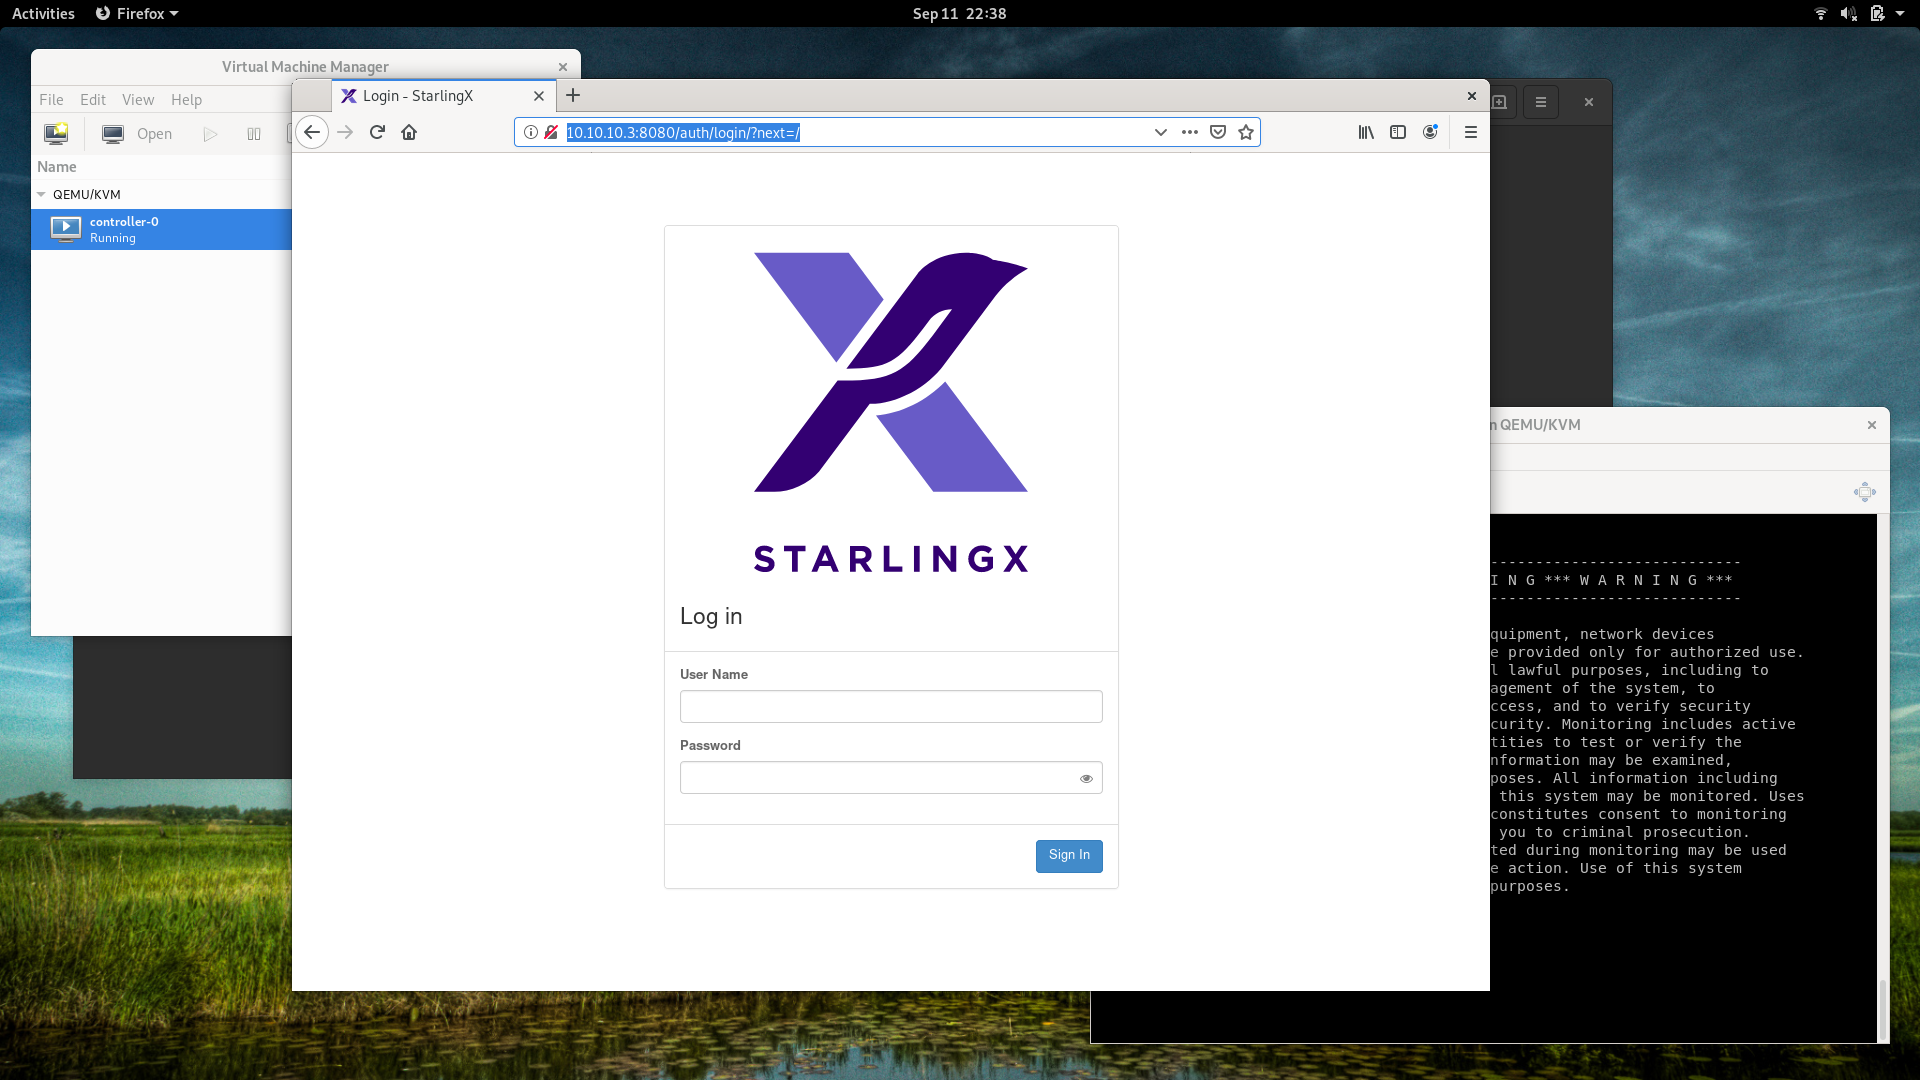 Starlingx admin page